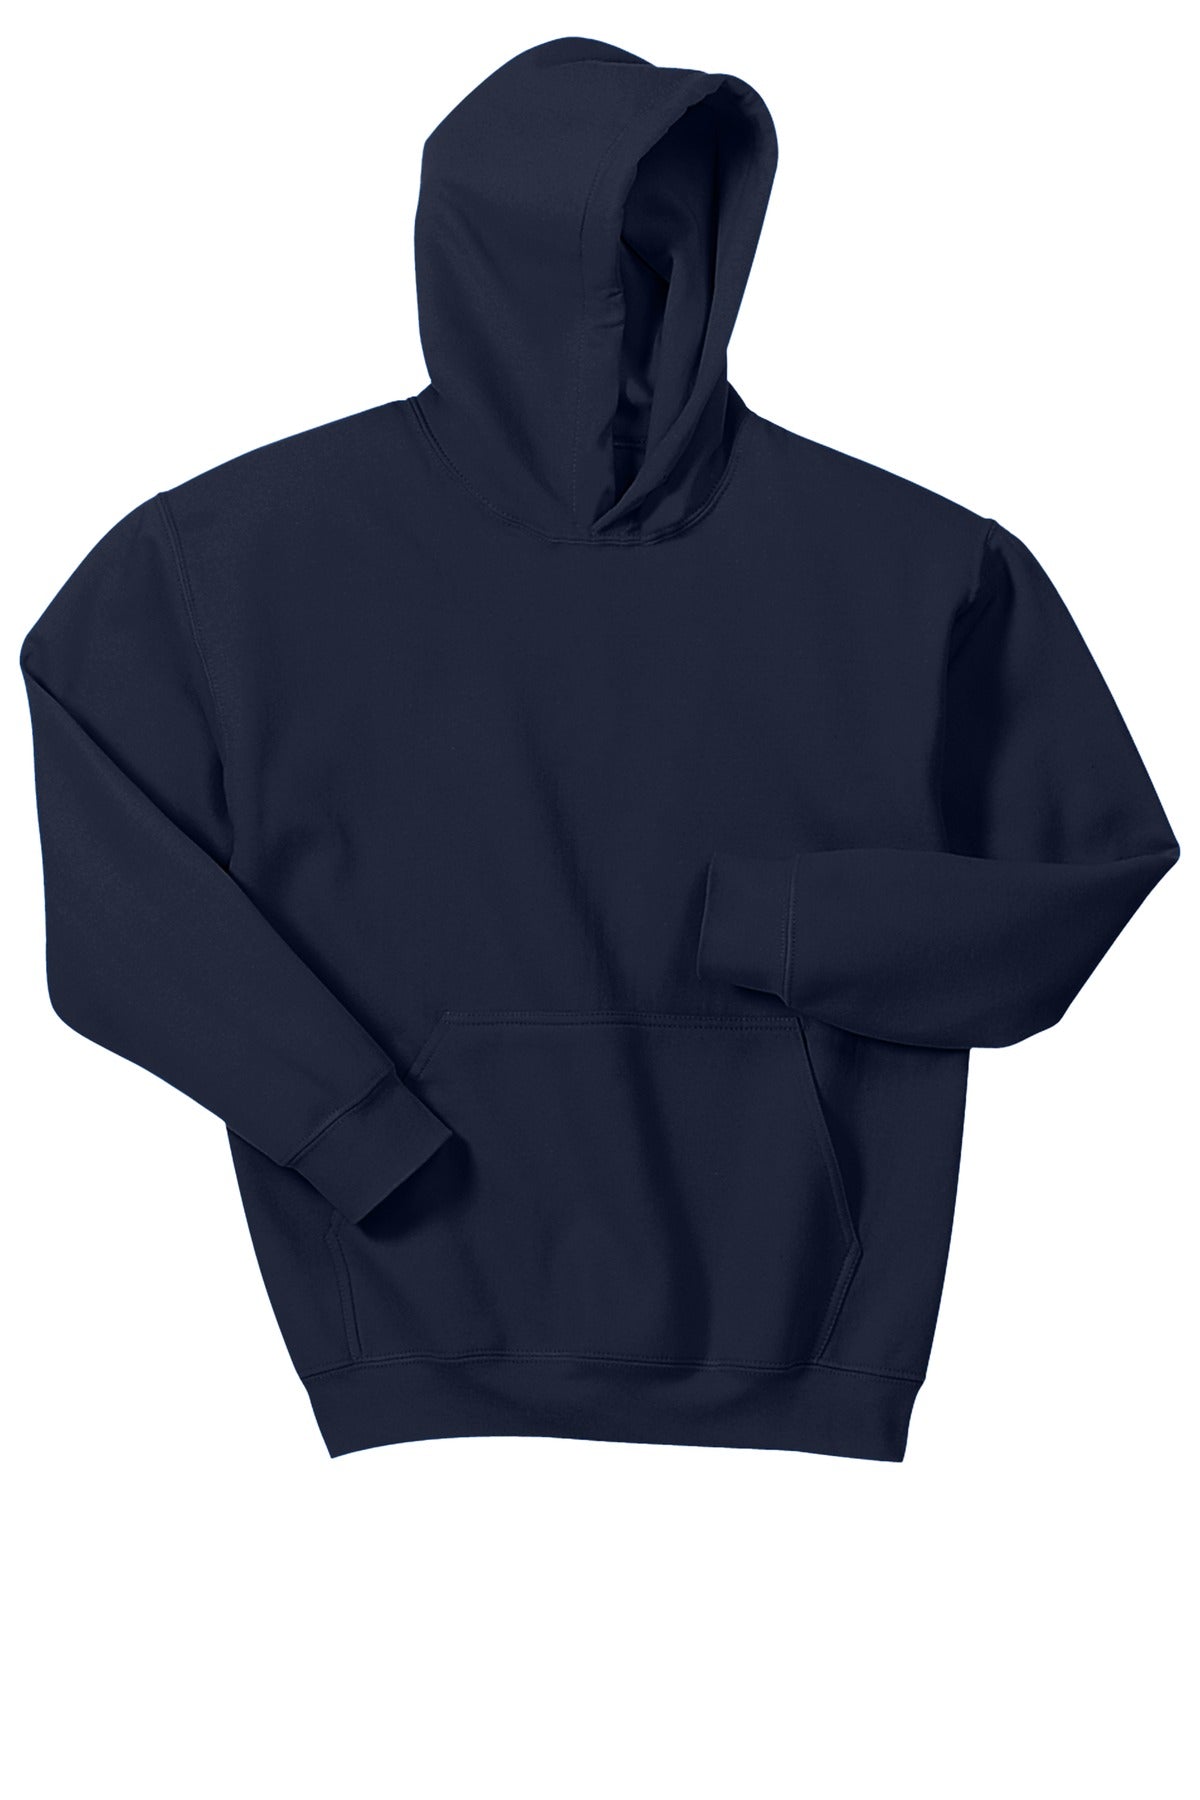 Gone RogueGildan® - Youth Heavy Blend™ Hooded Sweatshirt. 18500B Logo #3